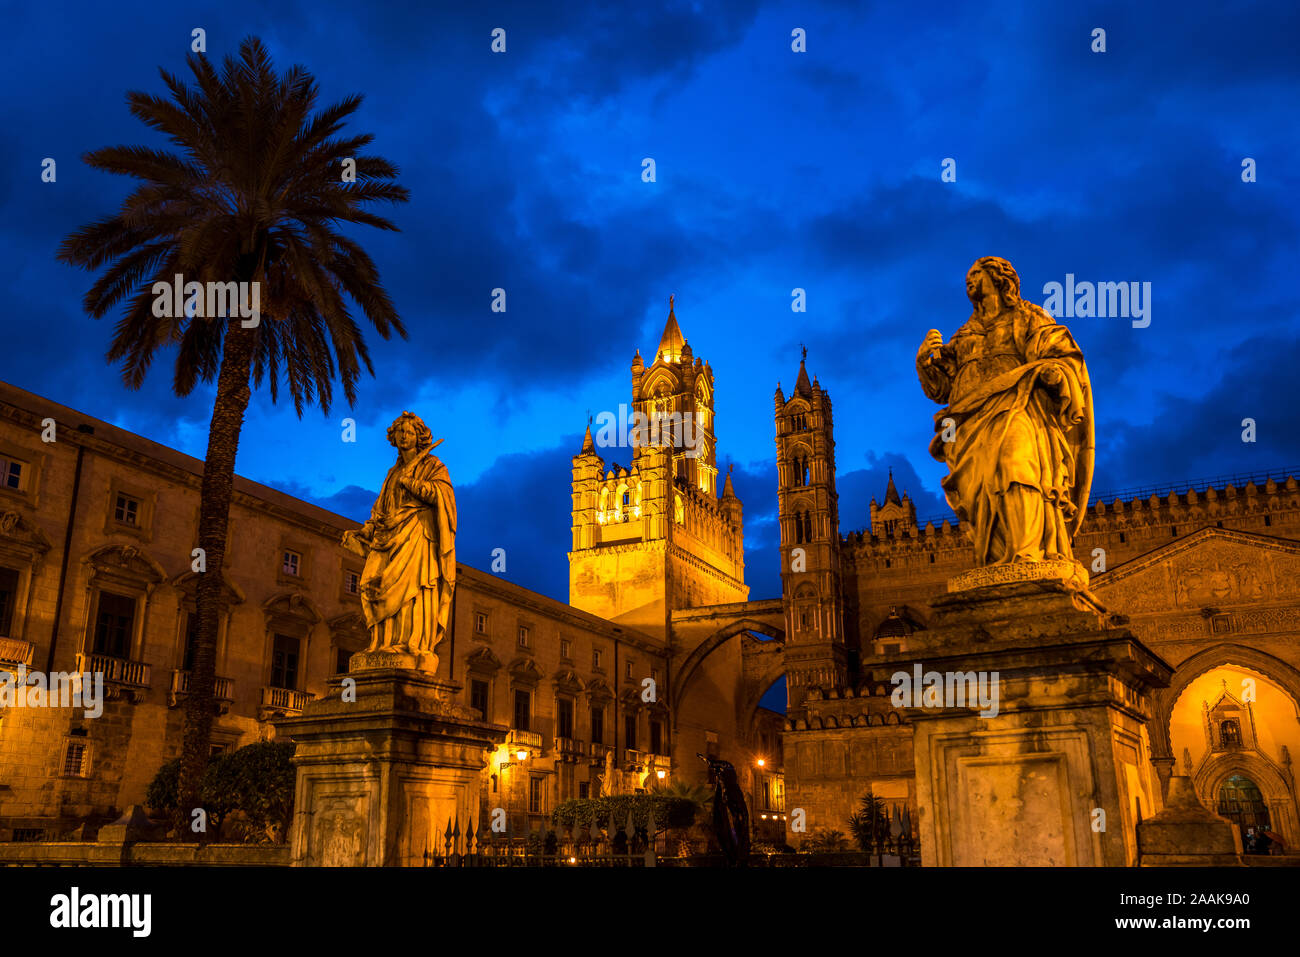 Statuen der Kathedrale Maria Santissima Assunta in der Abenddämmerung, Palermo, Sizilien, Italien, Europa | Statuen vor der Kathedrale Stockfoto